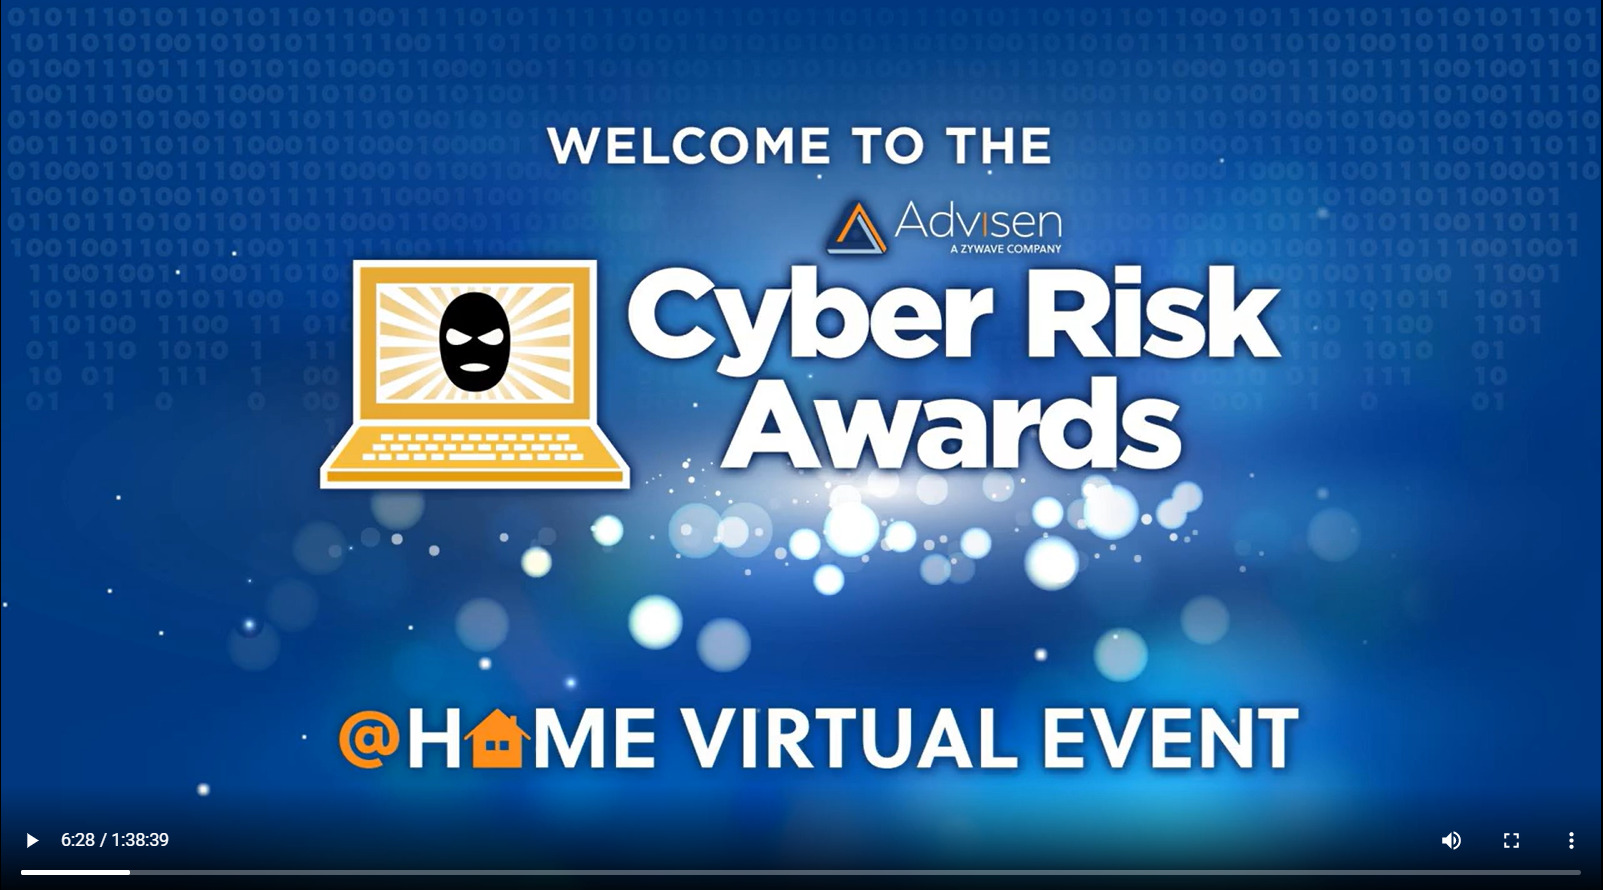 2021 Advisen Cyber Risk Awards Video Recap Advisen Ltd.